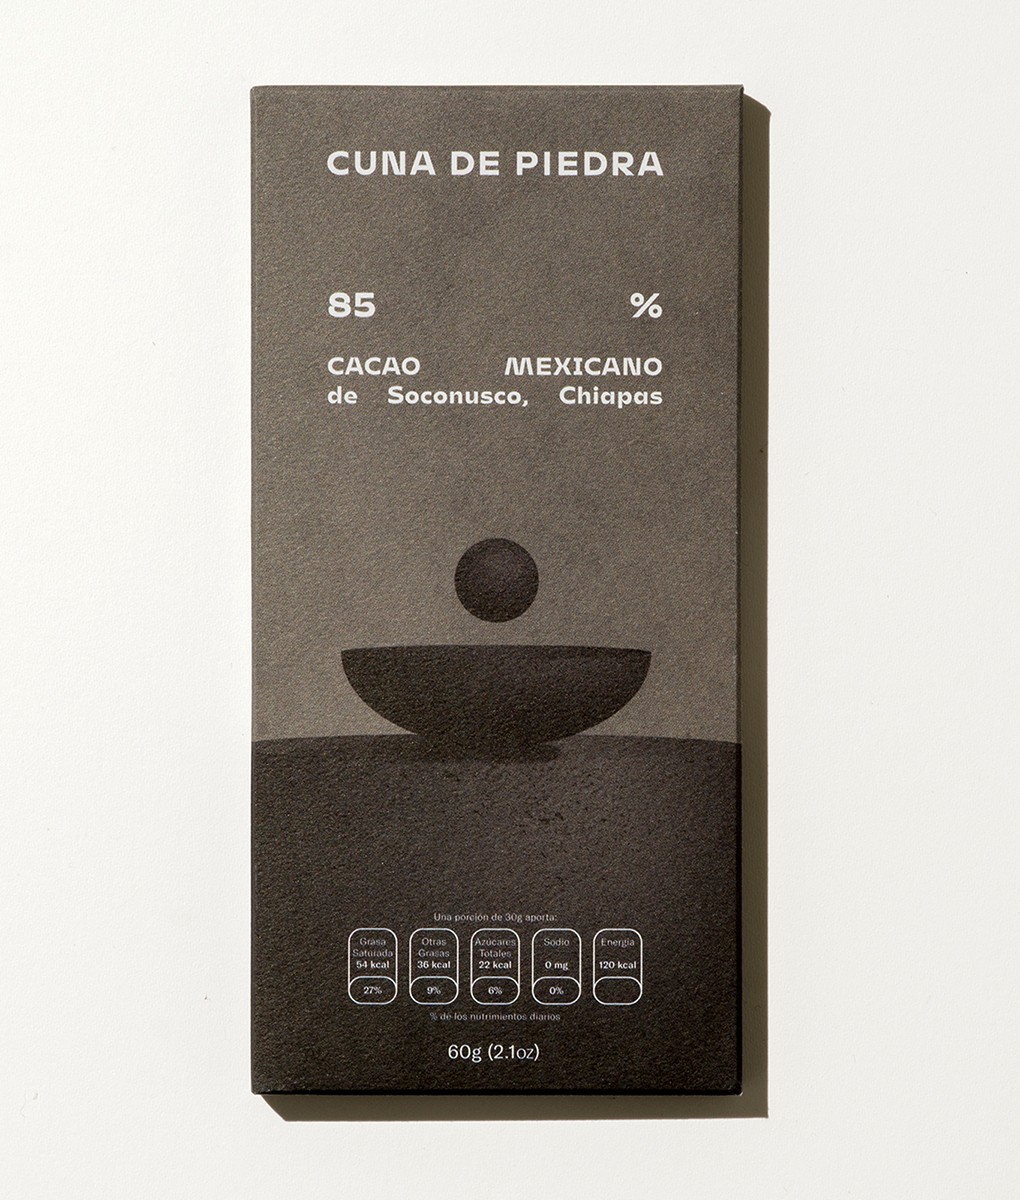 CUNA De PIEDRA | Schokolade »Mexican Soconusco Chiapas« 85% | 60g